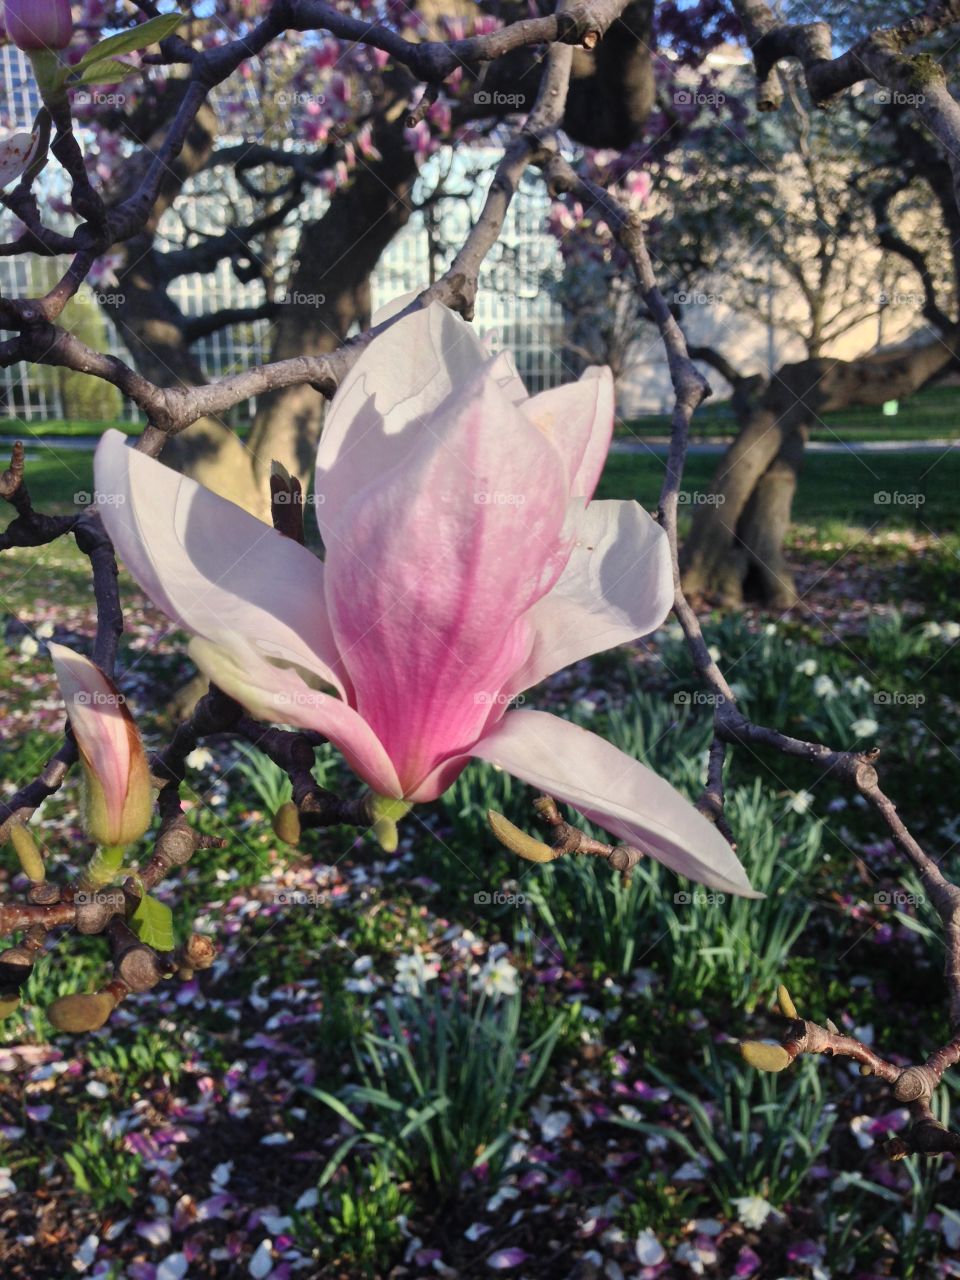 Flower in Central Park. Central Park in springtime 